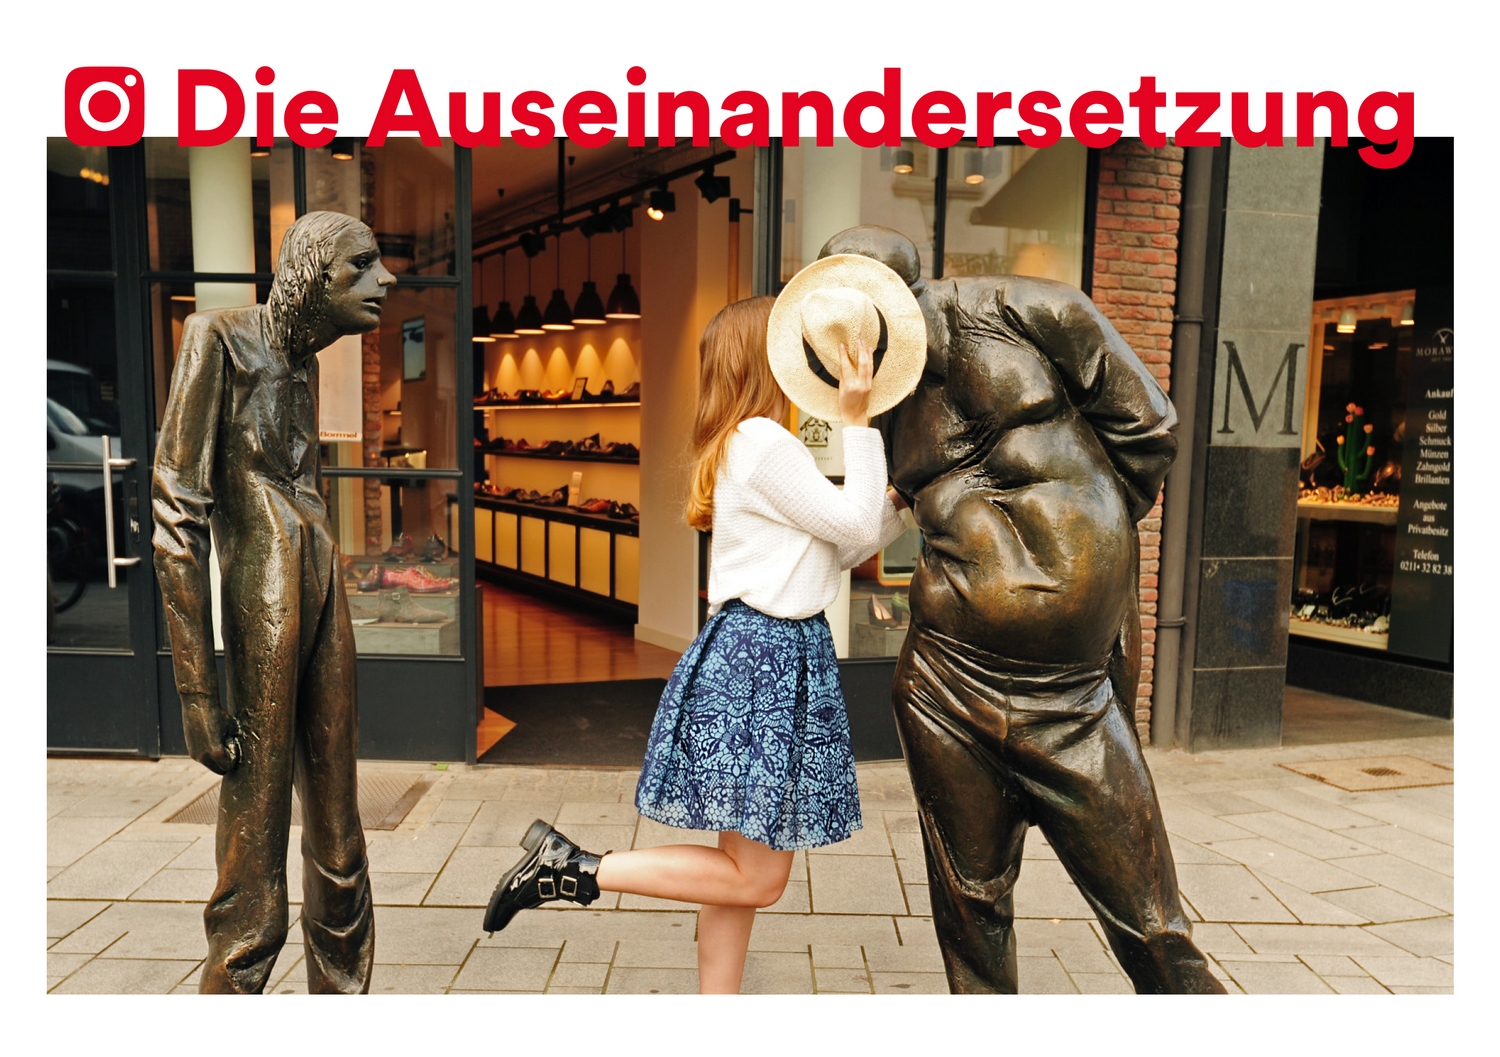 Der Bronze-Guss "Die Auseinandersetzung" in der Altstadt ist inzwischen eines der meistfotografierten Kunstwerke der Stadt